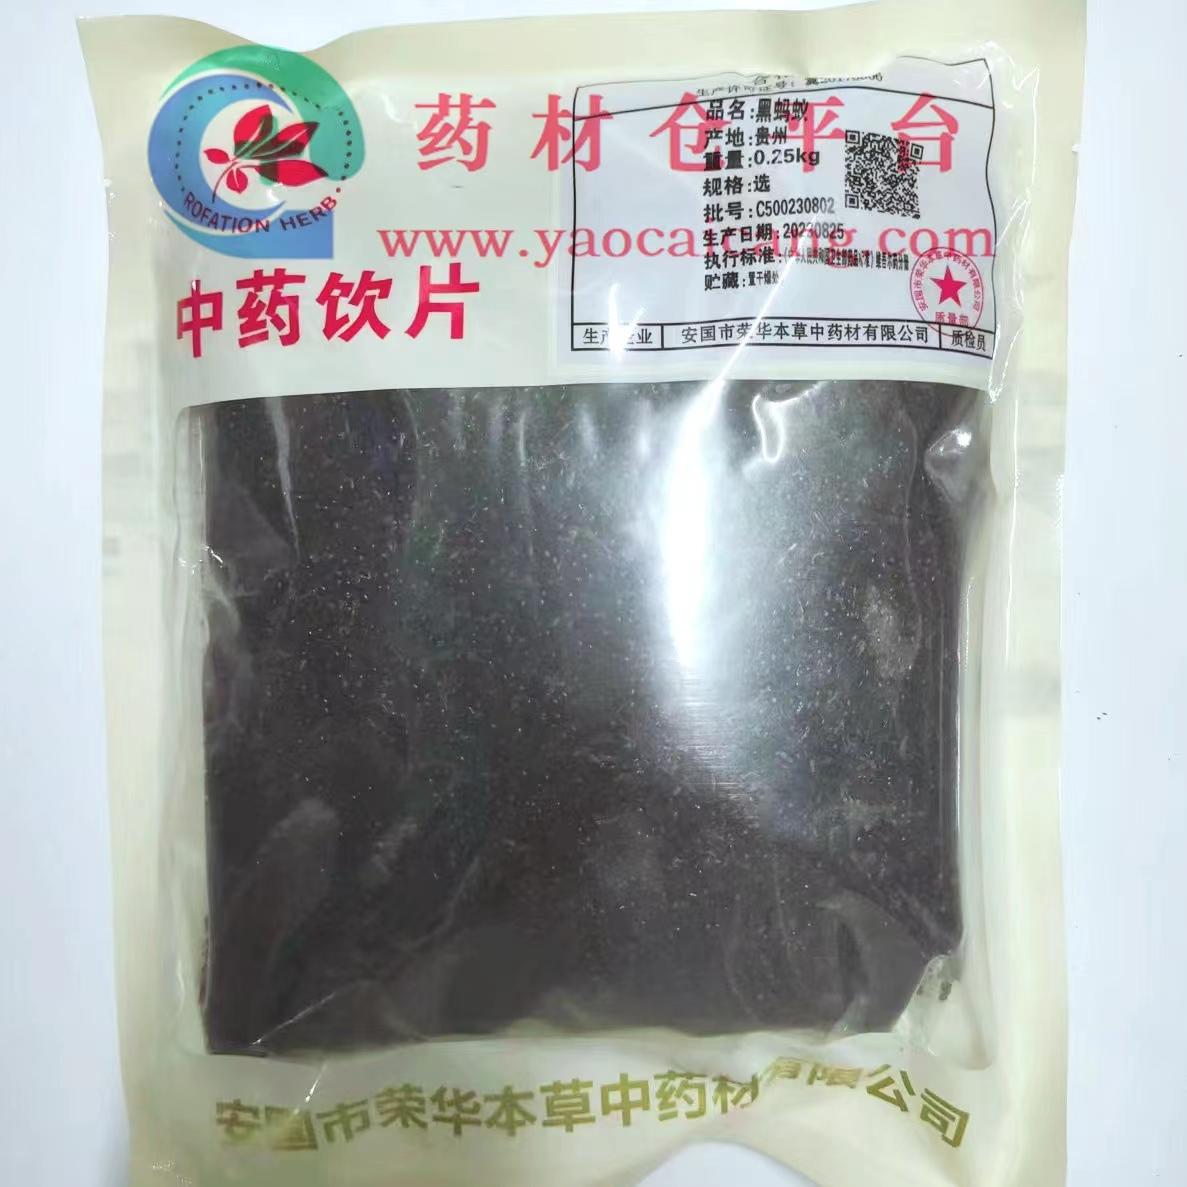 【】黑蚂蚁-选-0.25kg/袋-安国市荣华本草中药材有限公司